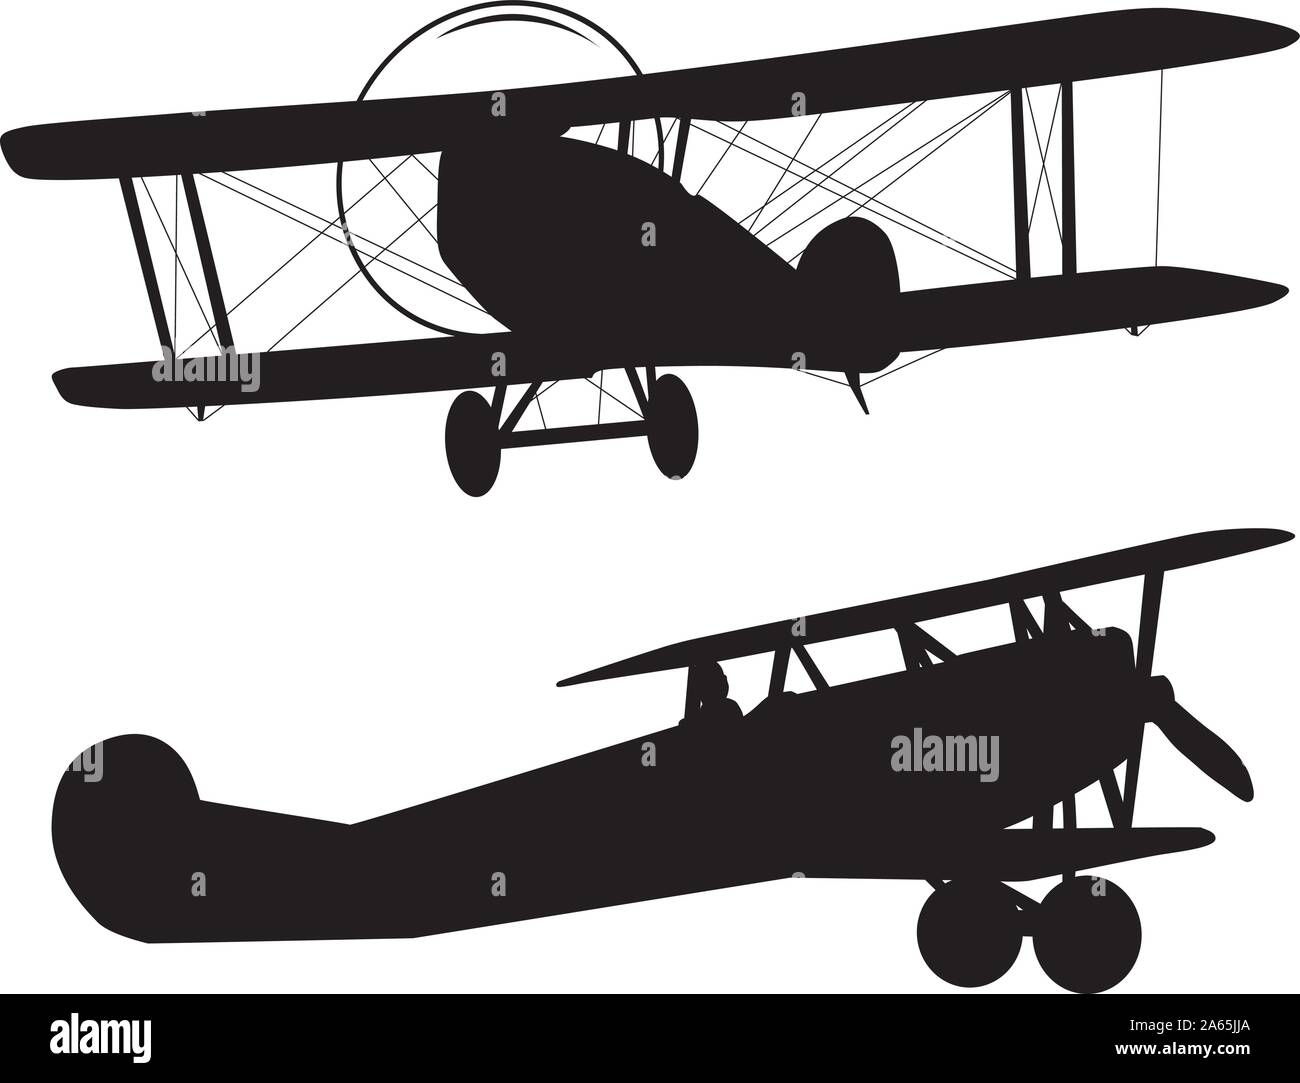 Silhouettes d'avions Vintage collection. Vector EPS 10 Illustration de Vecteur